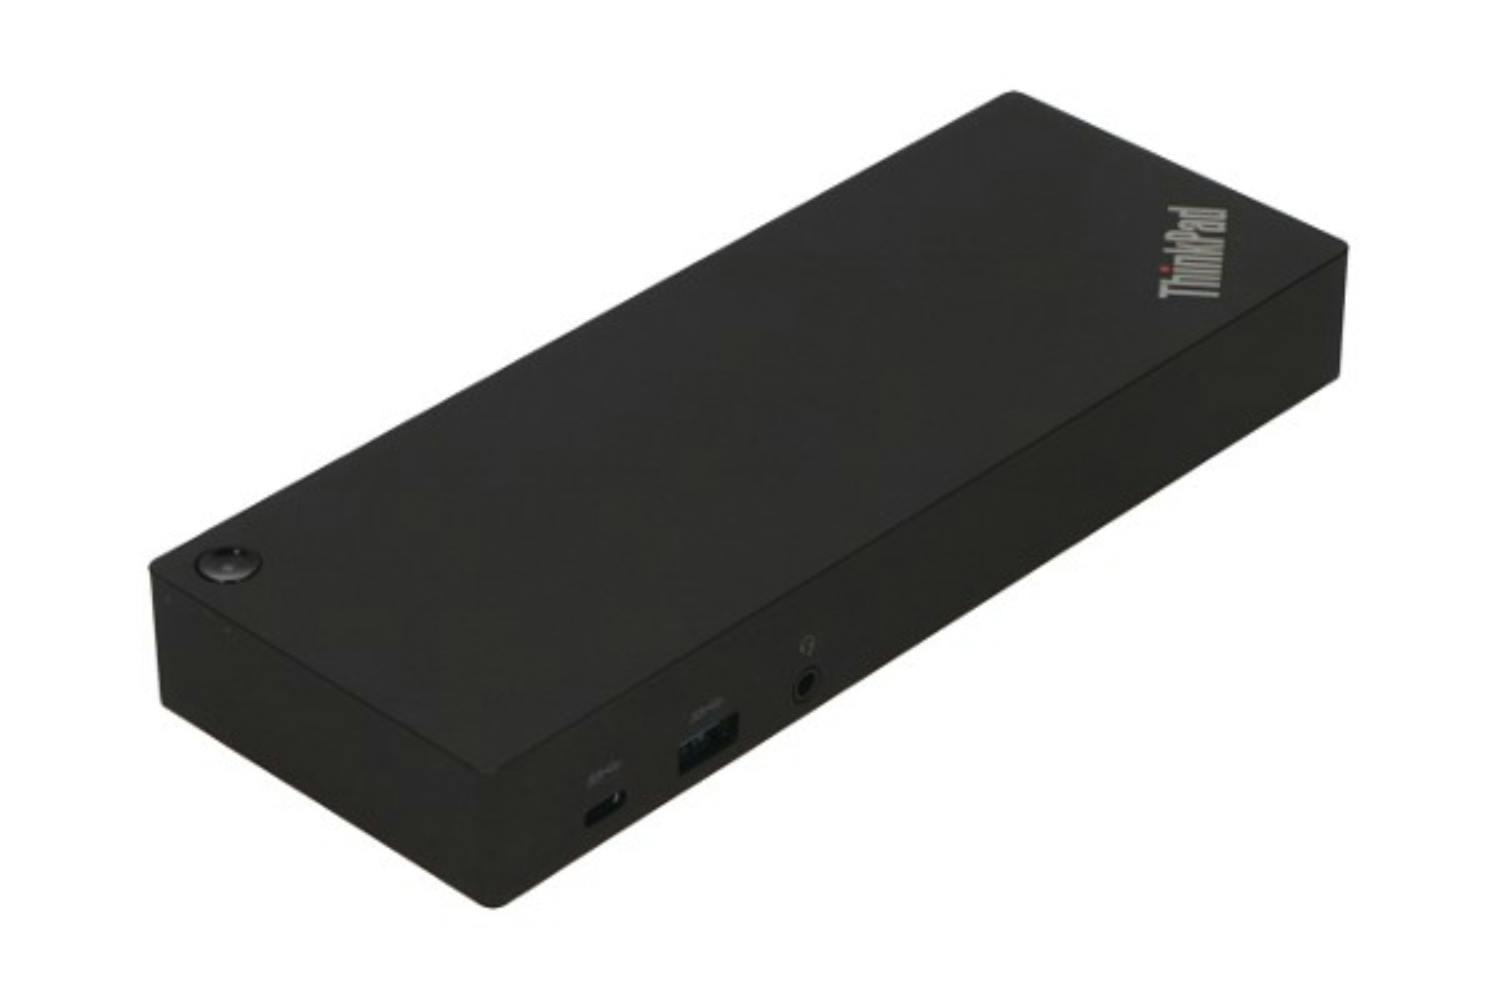 Lenovo 40AF0135DK ThinkPad Hybrid USB-C with USB-A Dock